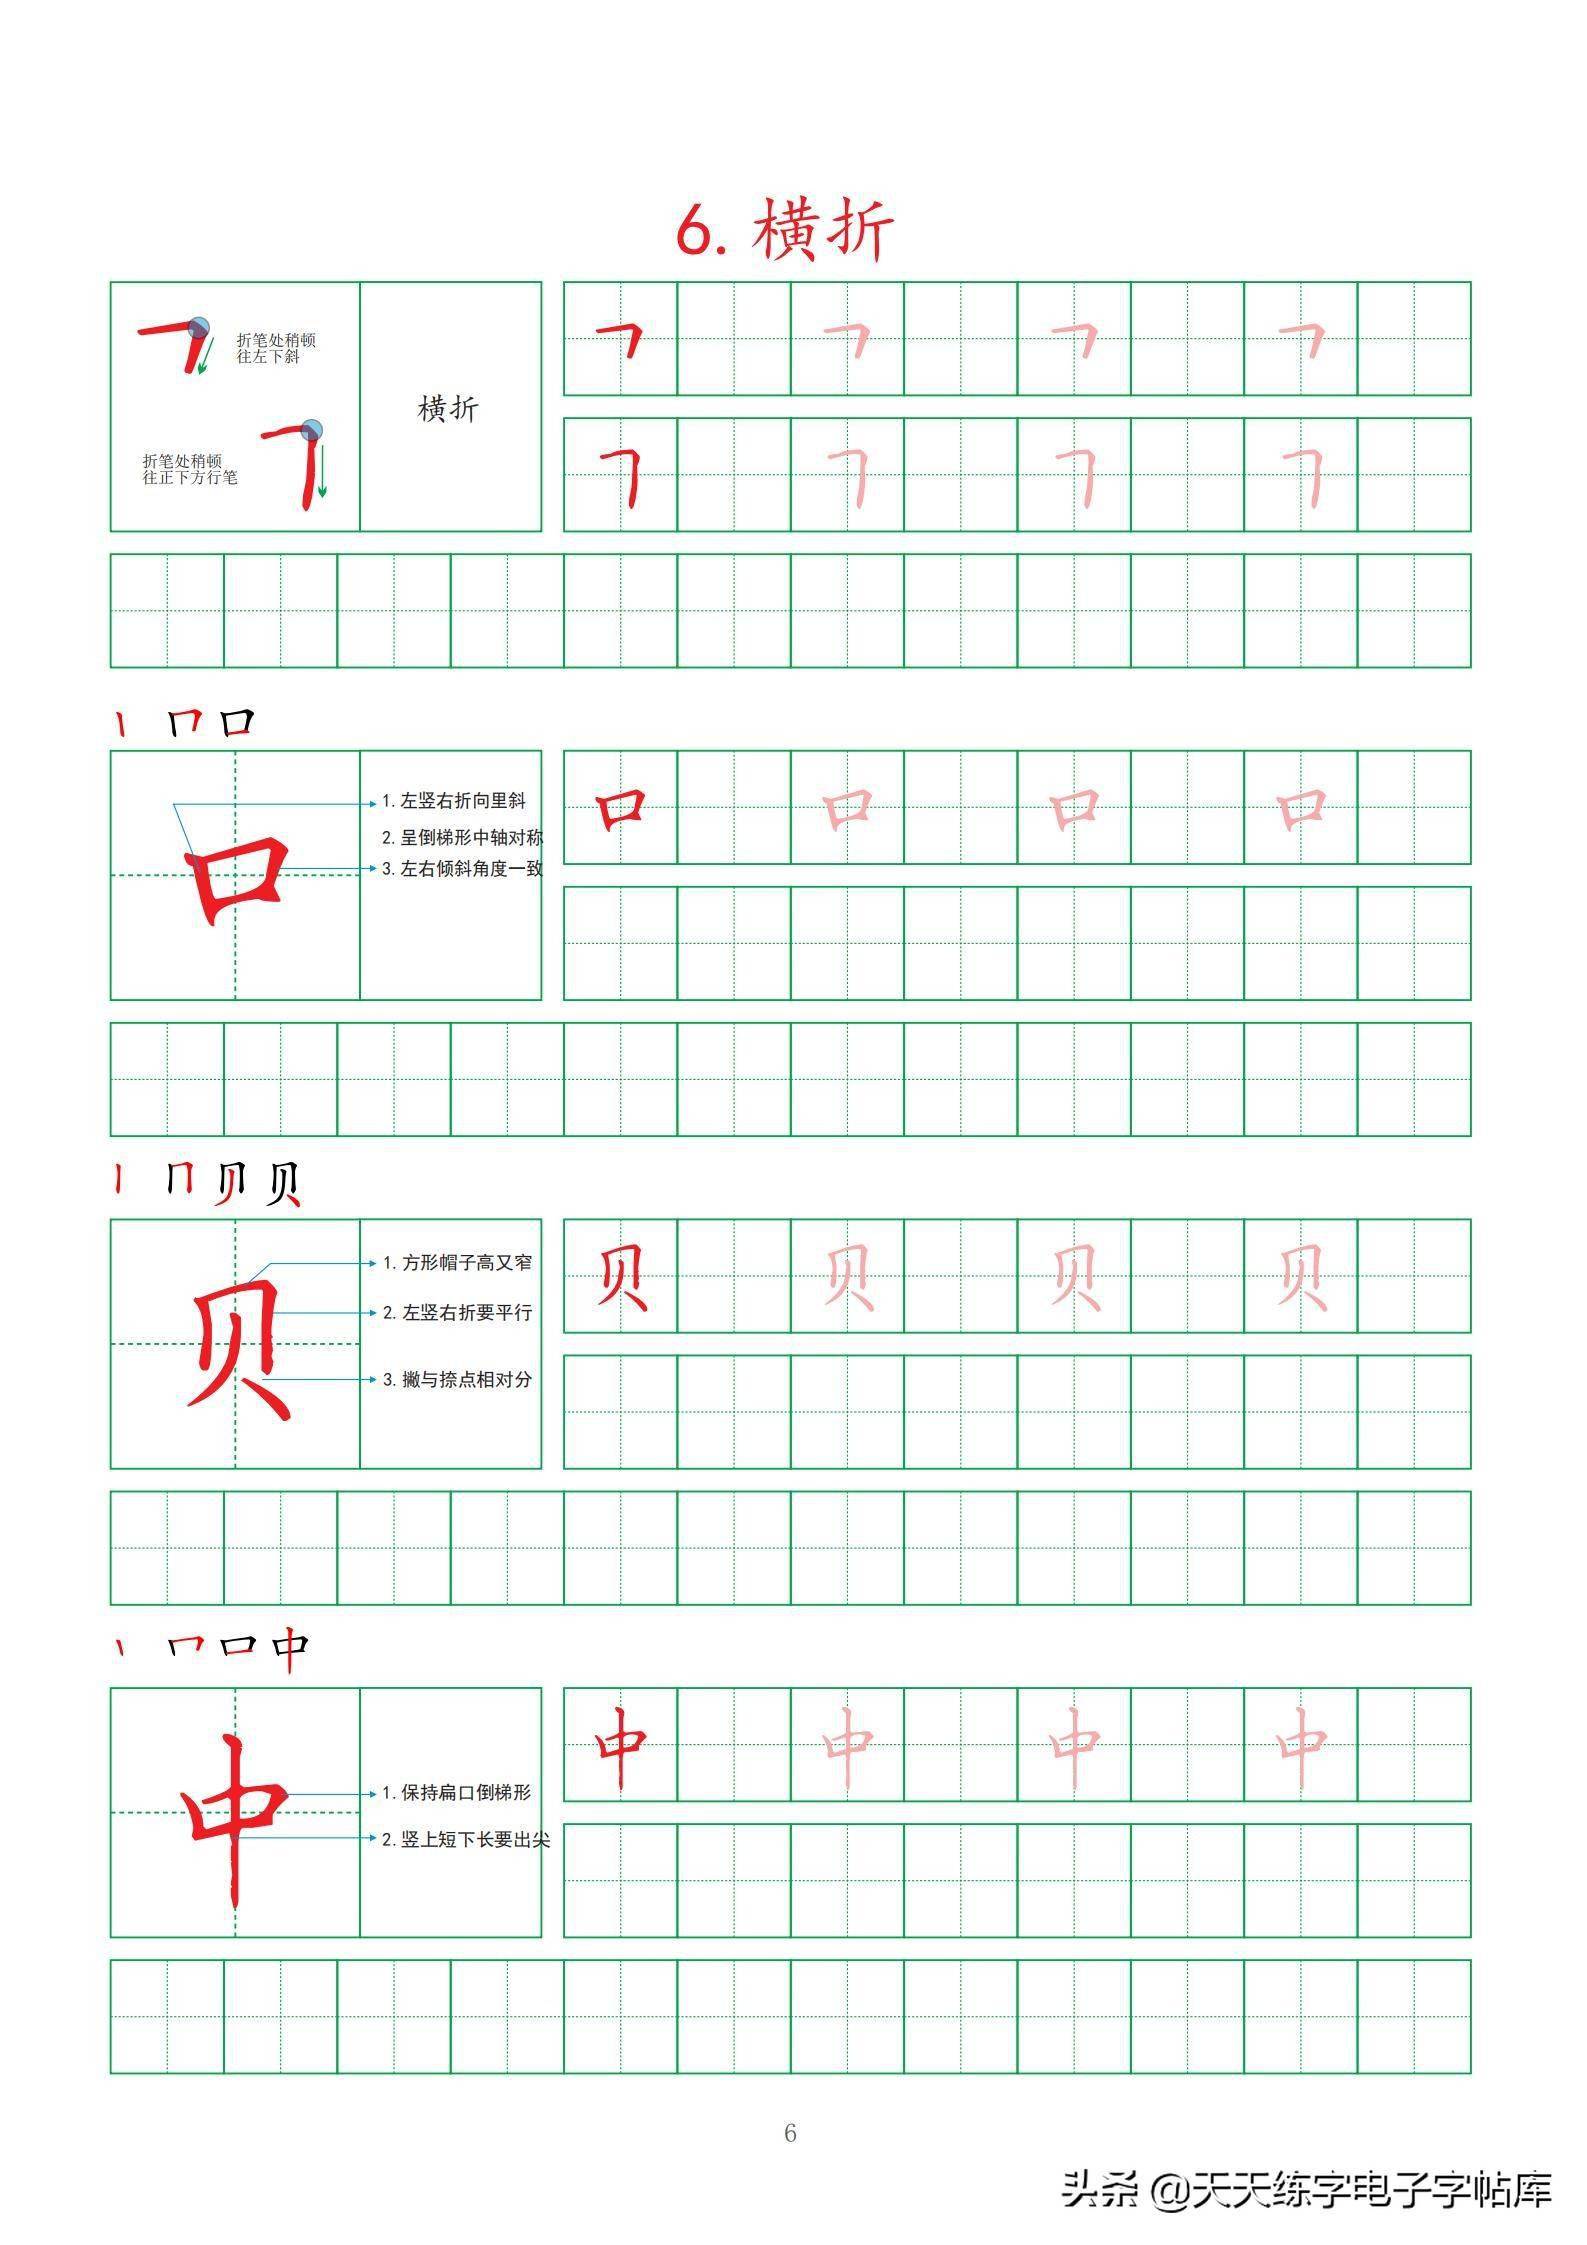 暑假练字计划:每天一页!打印练习!汉字基本笔画强化训练30页